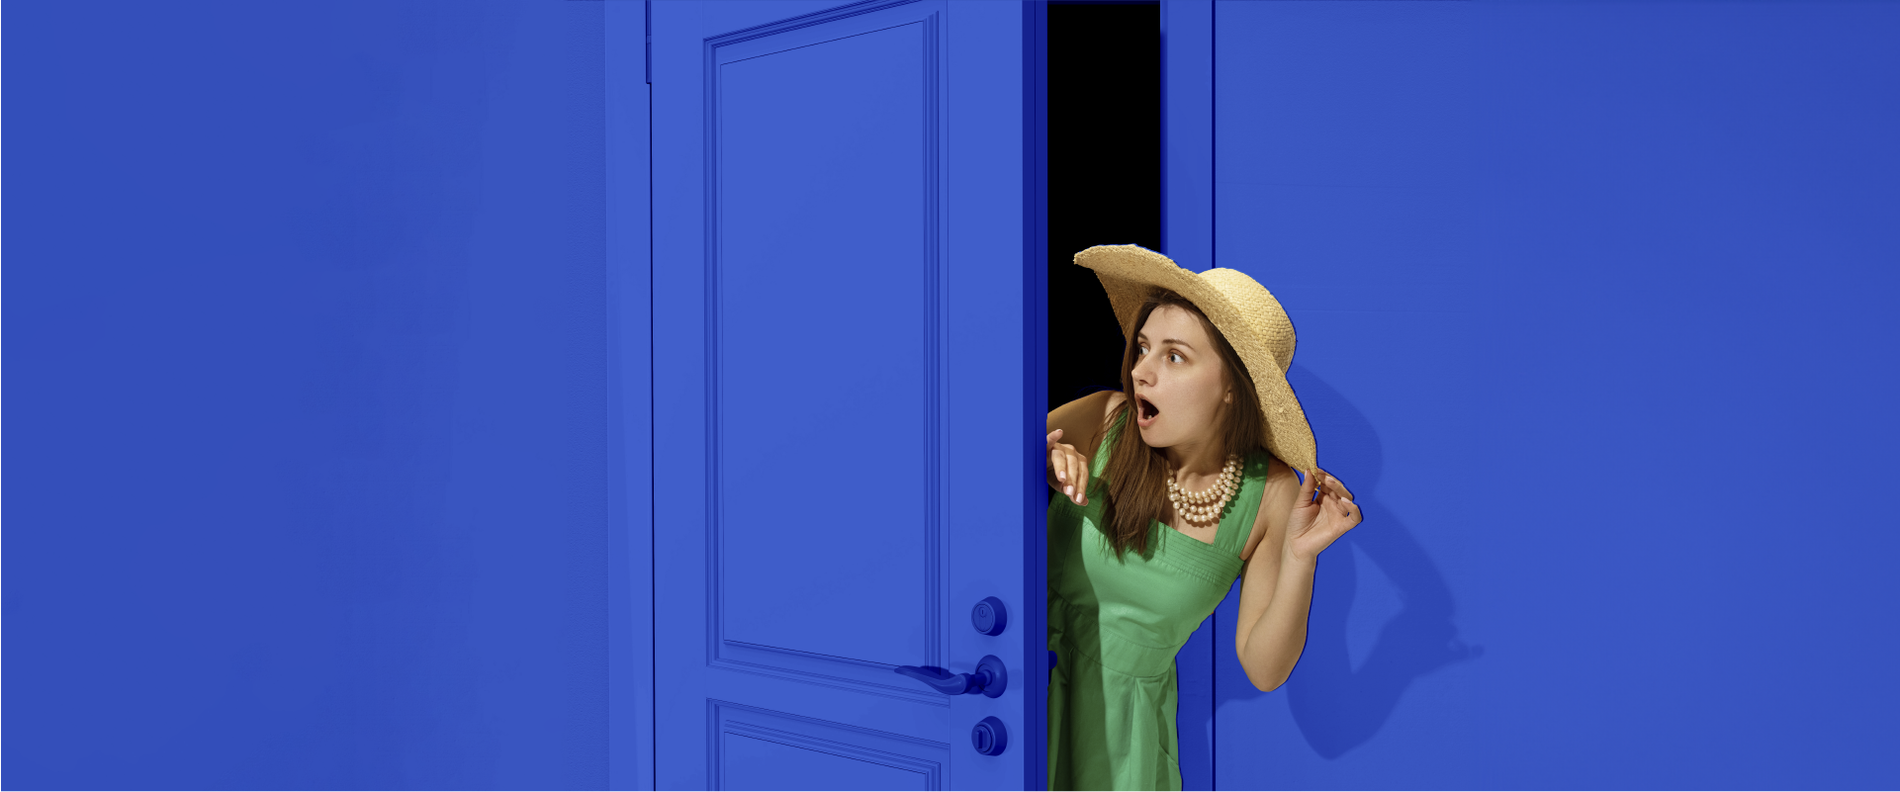 una jove amb sombrero i collar s'apropa d' una puerta azul